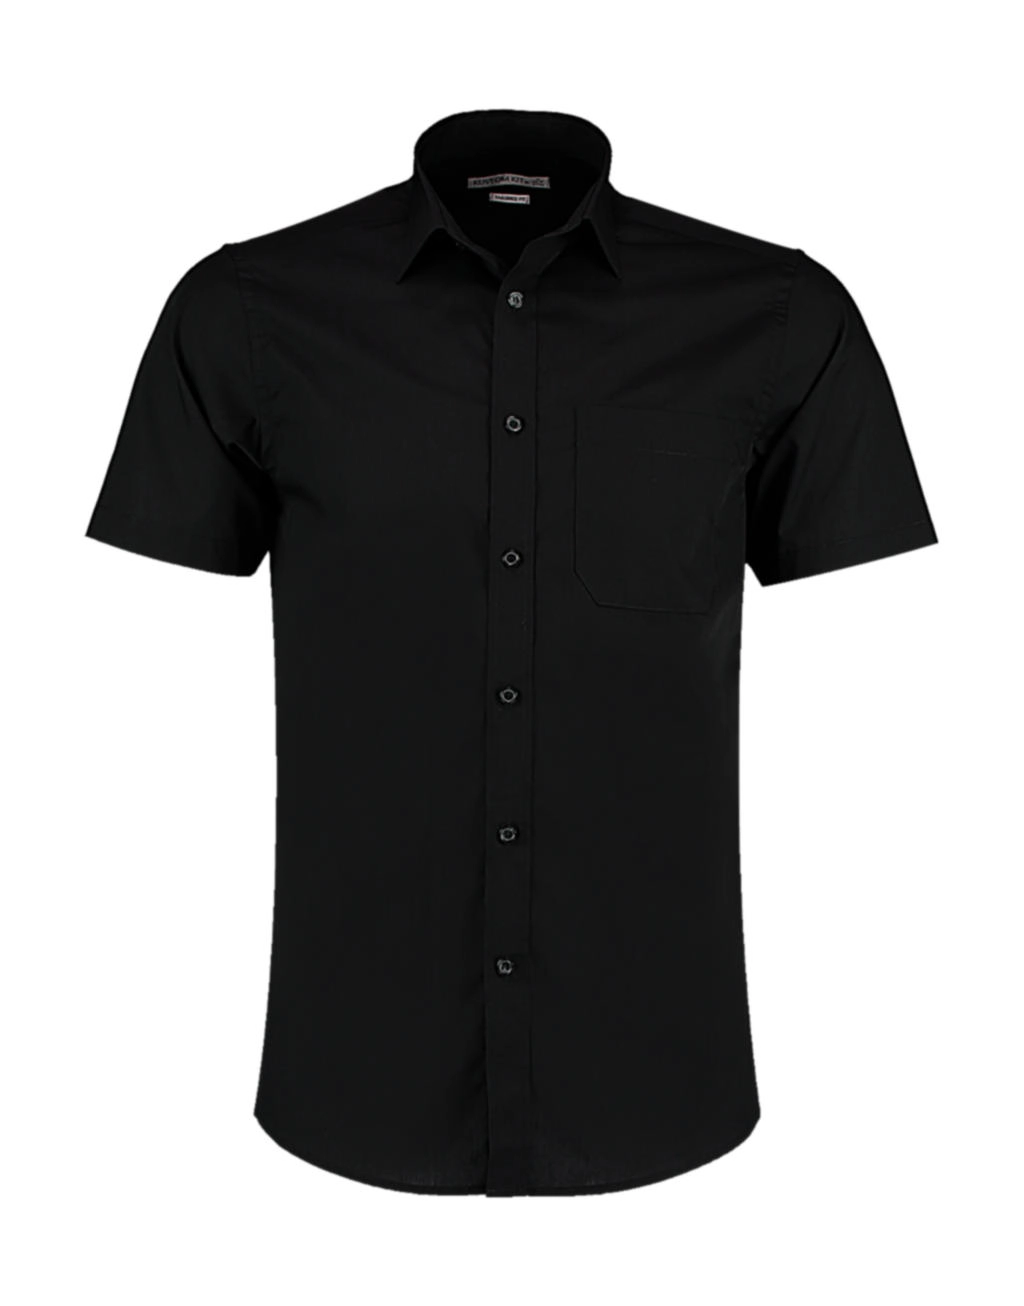 Tailored Fit Poplin Shirt SSL zum Besticken und Bedrucken in der Farbe Black mit Ihren Logo, Schriftzug oder Motiv.